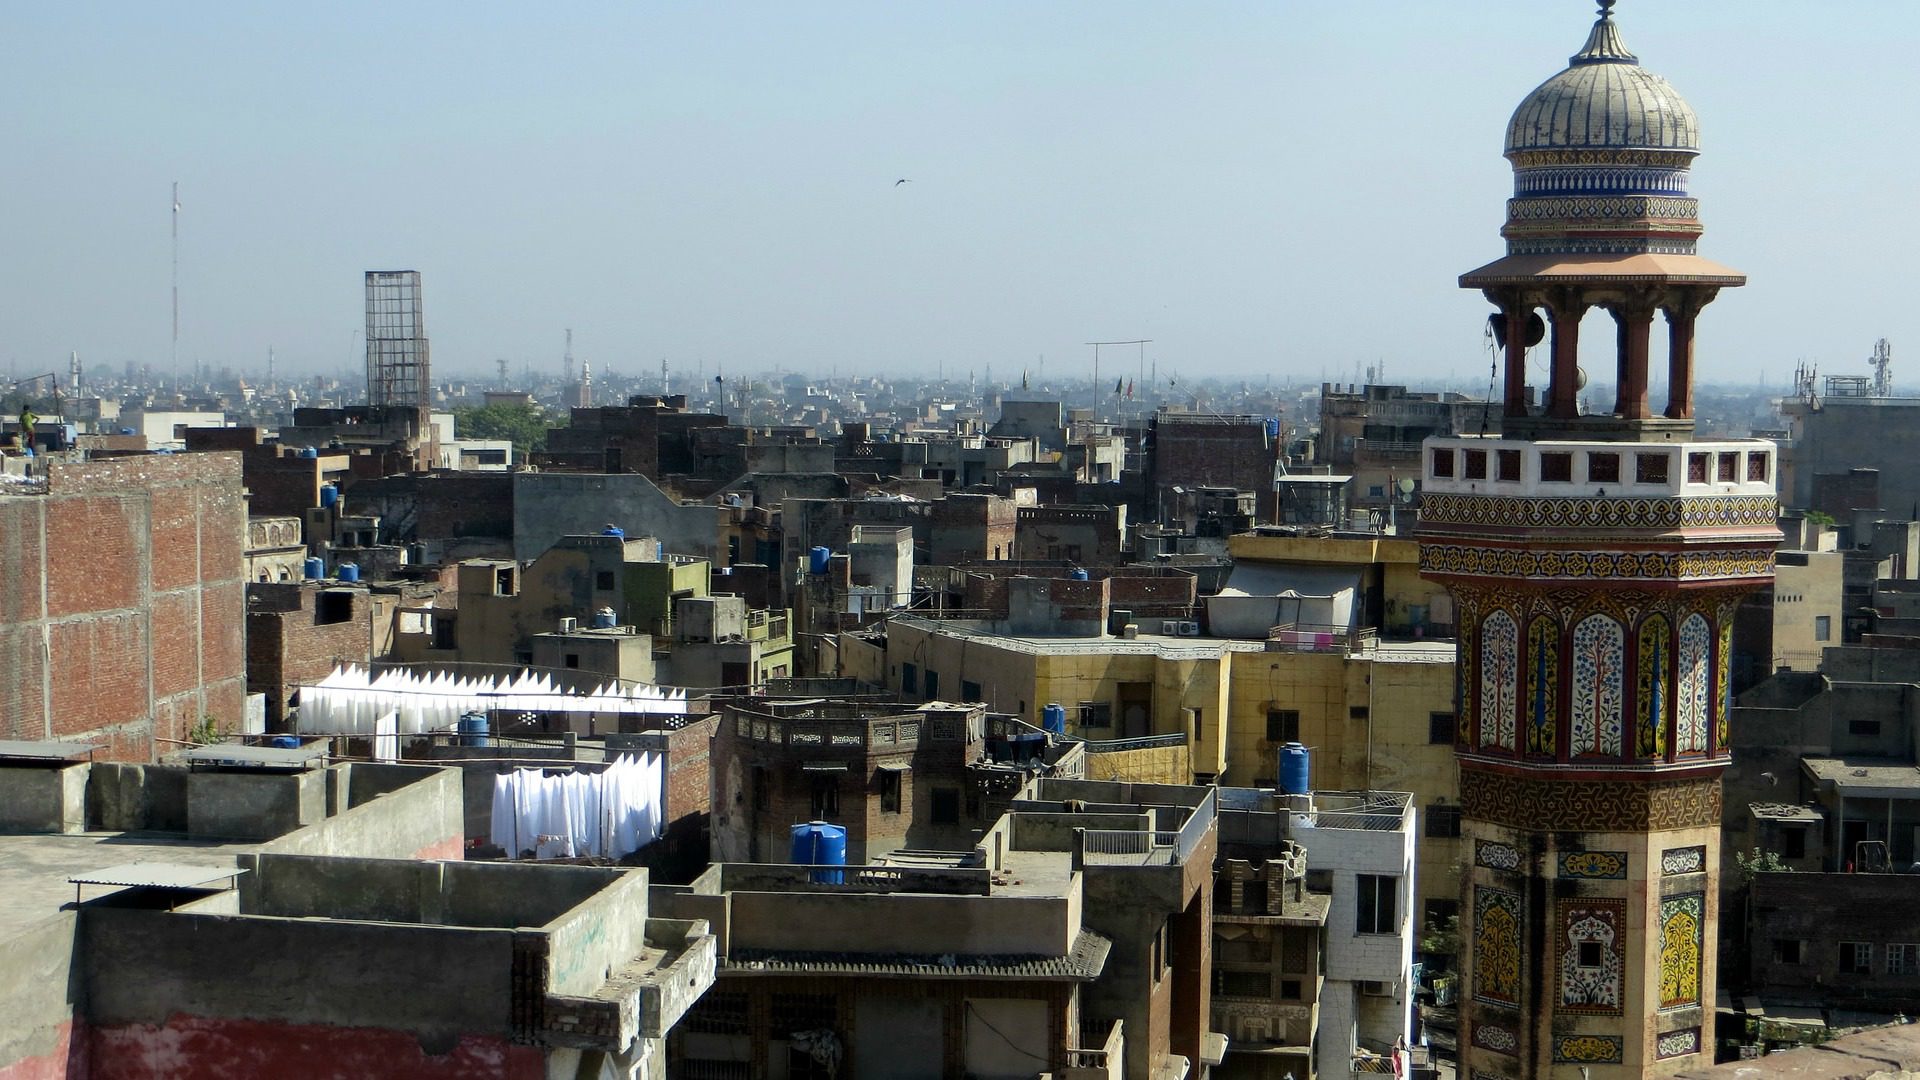 La ville de Lahore au Pakistan où plusieurs actes de violence contre les minorités religieuse ont eu lieu ces derniers mois. (Photo: Flickr/Wasif Malik/CC BY 2.0)